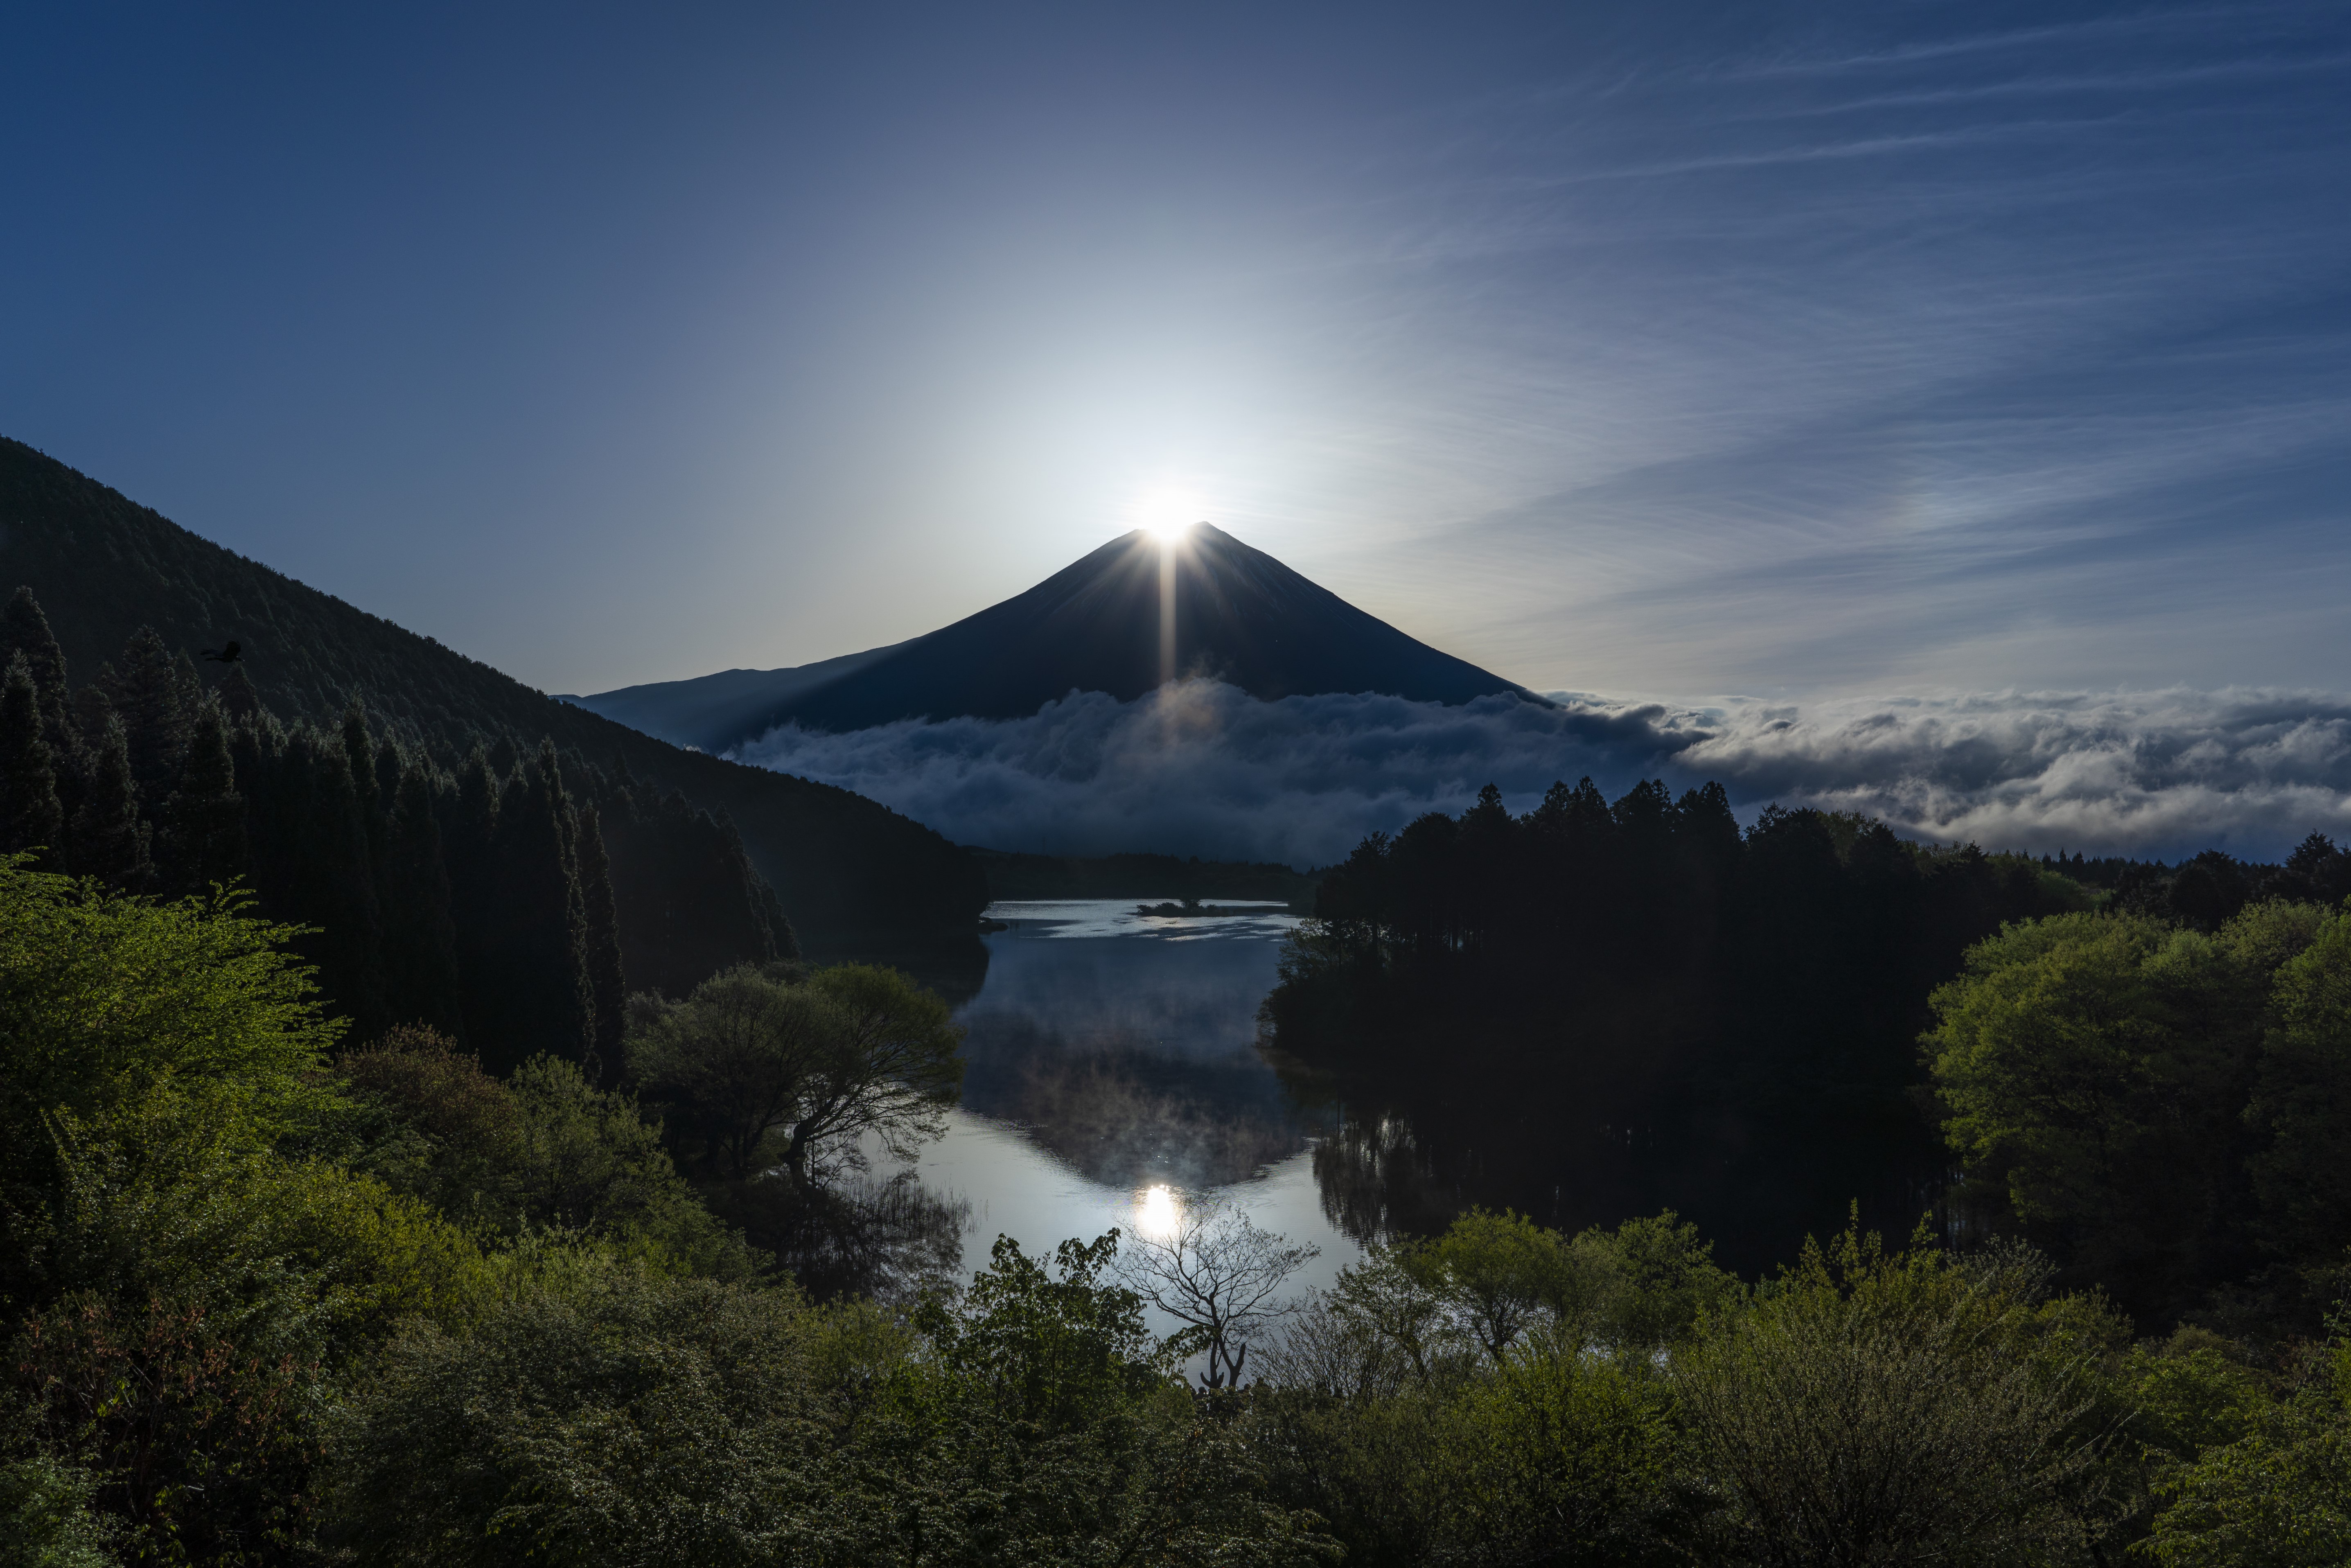 4月20日 朝6時 目の前には感動の瞬間 春のダイヤモンド富士・田貫湖に